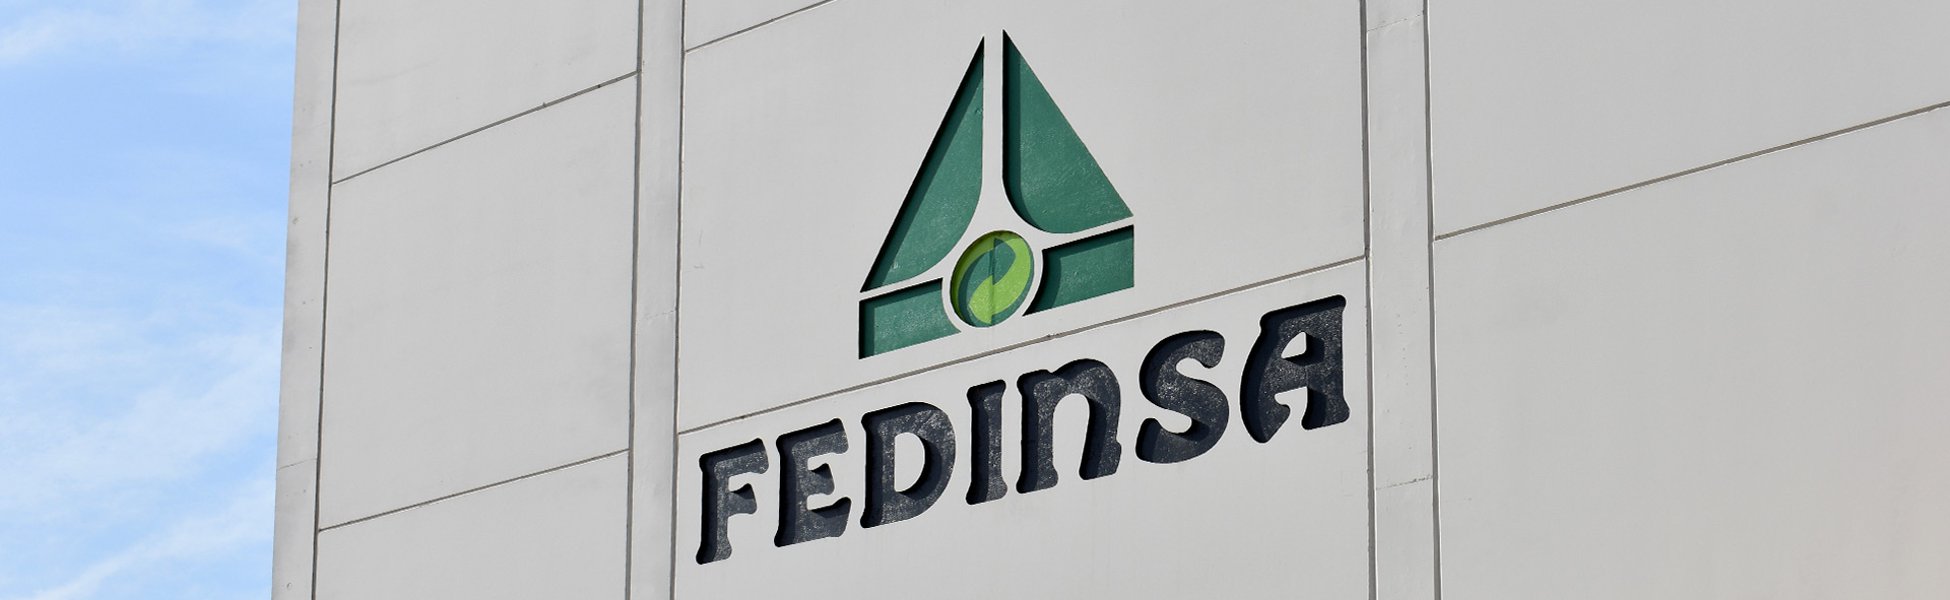 FEDINSA-Logo in Relief auf einer Fassade der Fabrik.